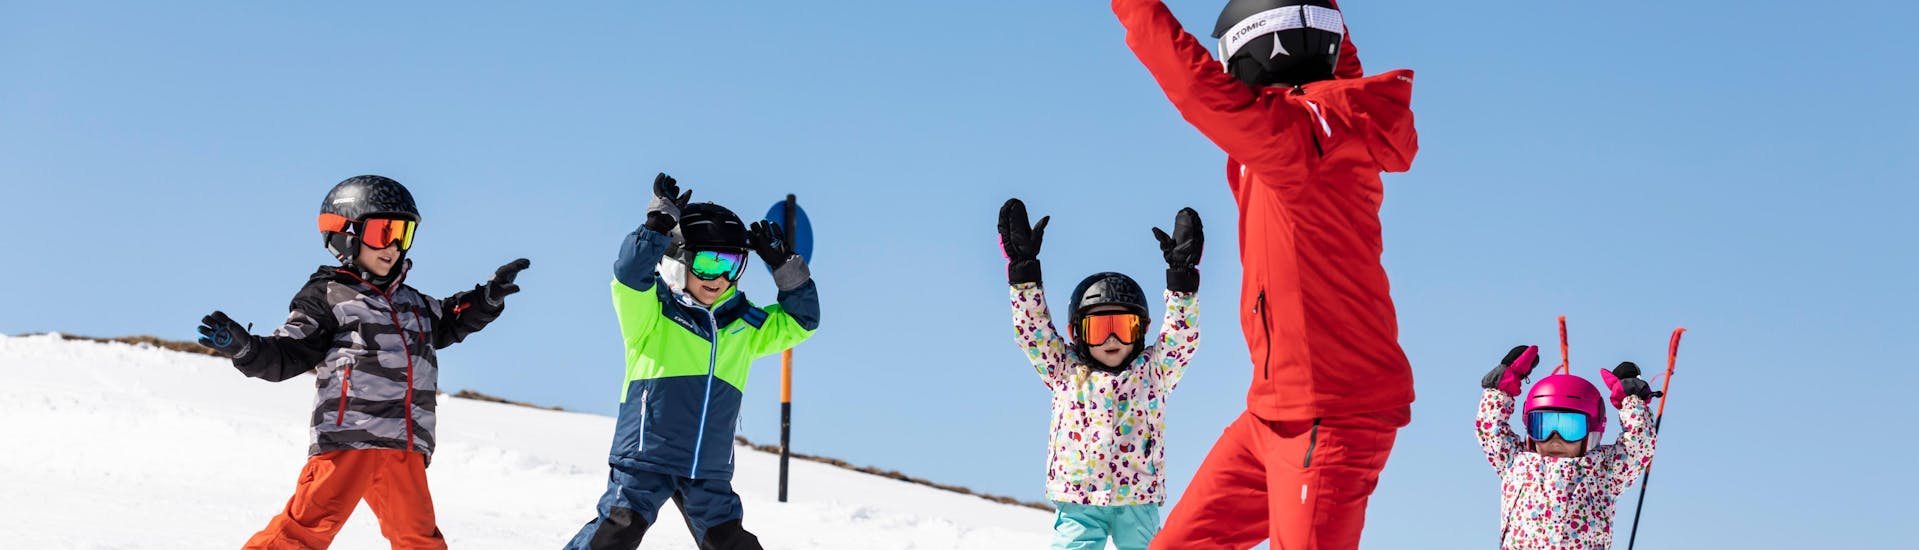 Plusieurs enfants avec leur moniteur de ski lors d'un cours collectif de ski dans la destination de ski Les Carroz.